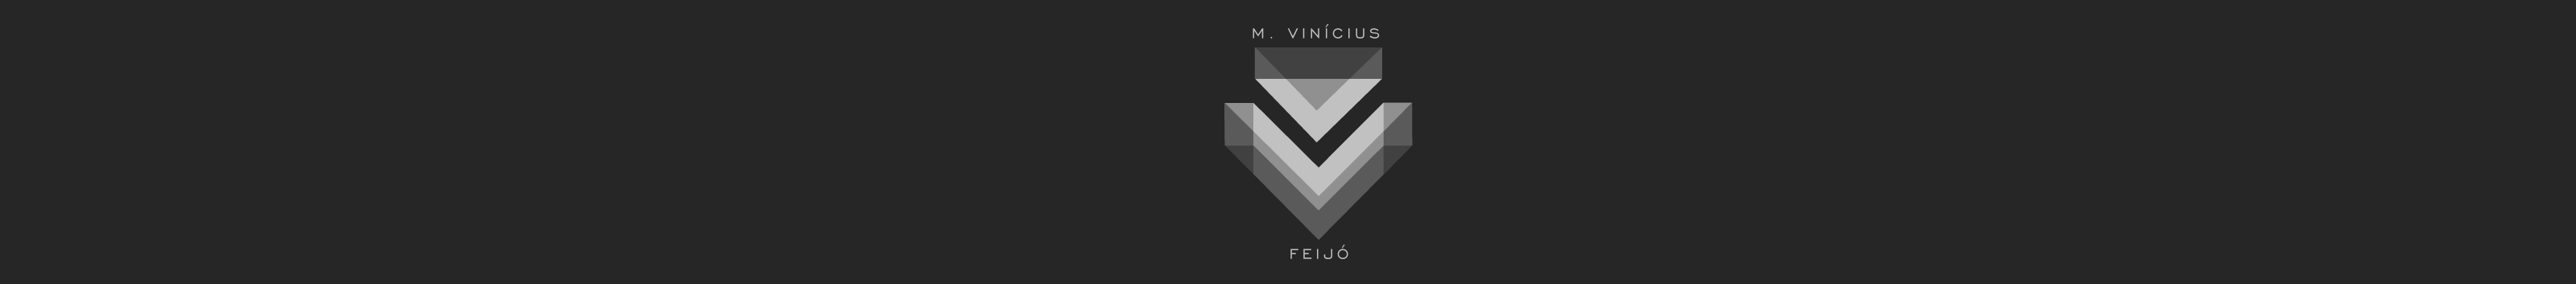 Marcos Vinícius Feijó's profile banner